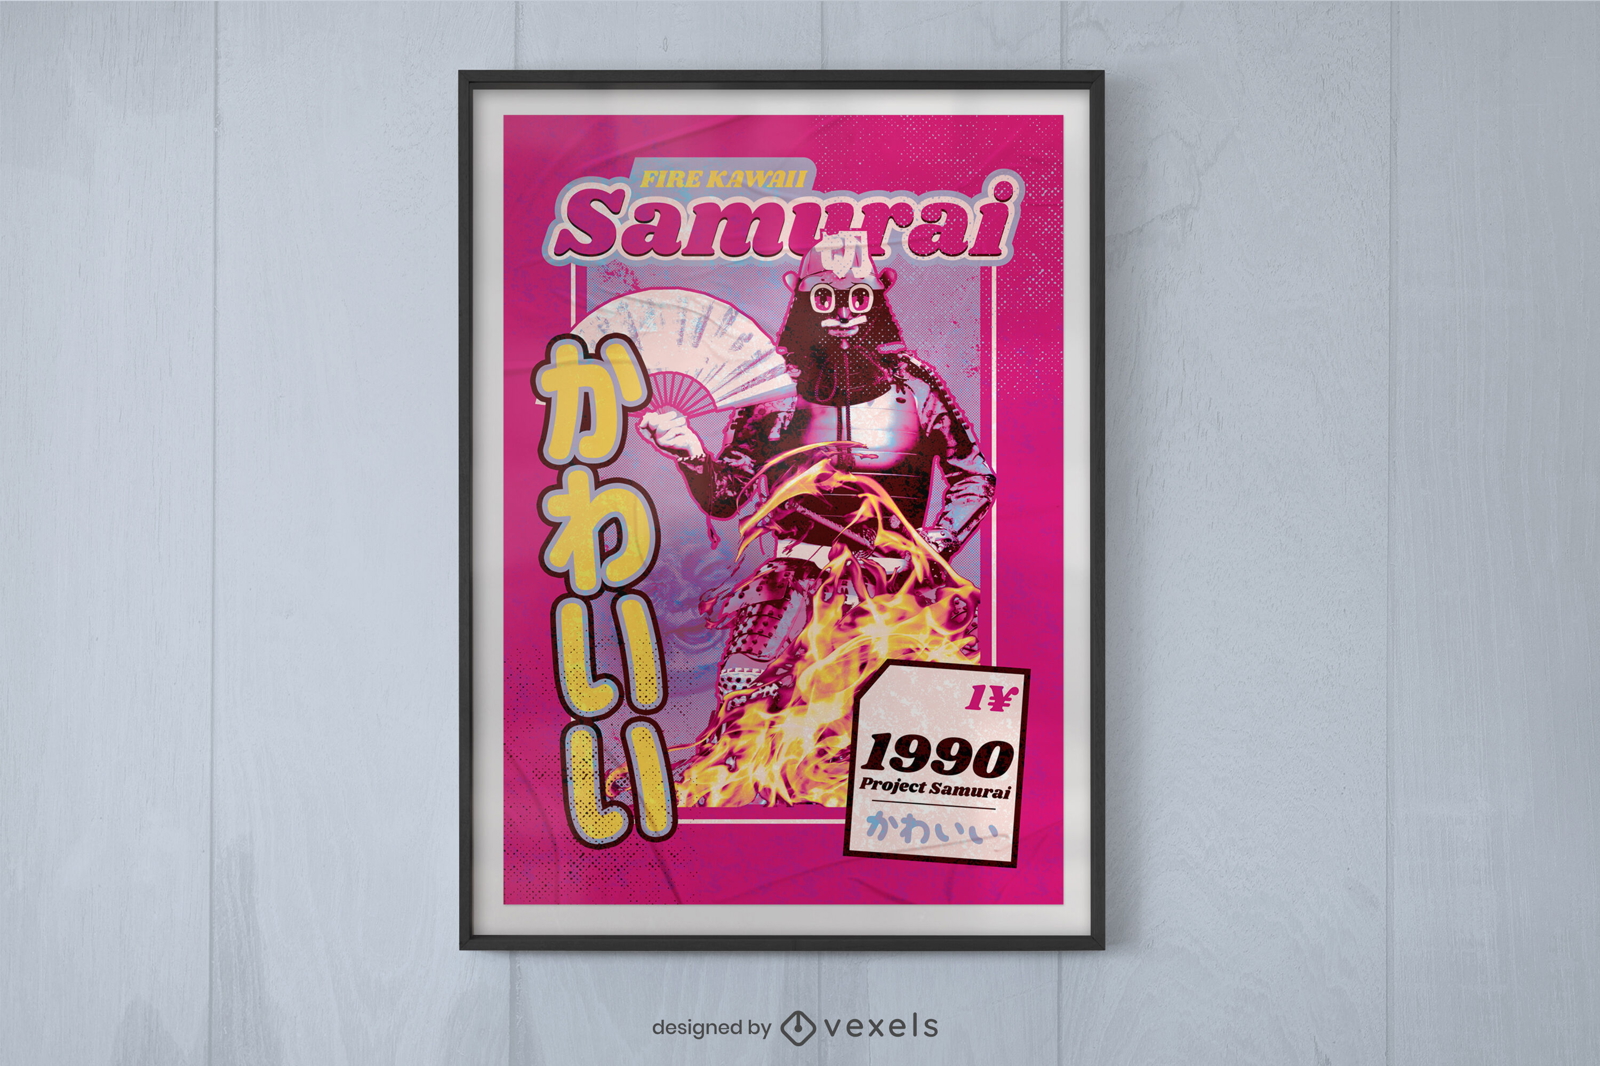 Samurai-Roboter-Poster-Design